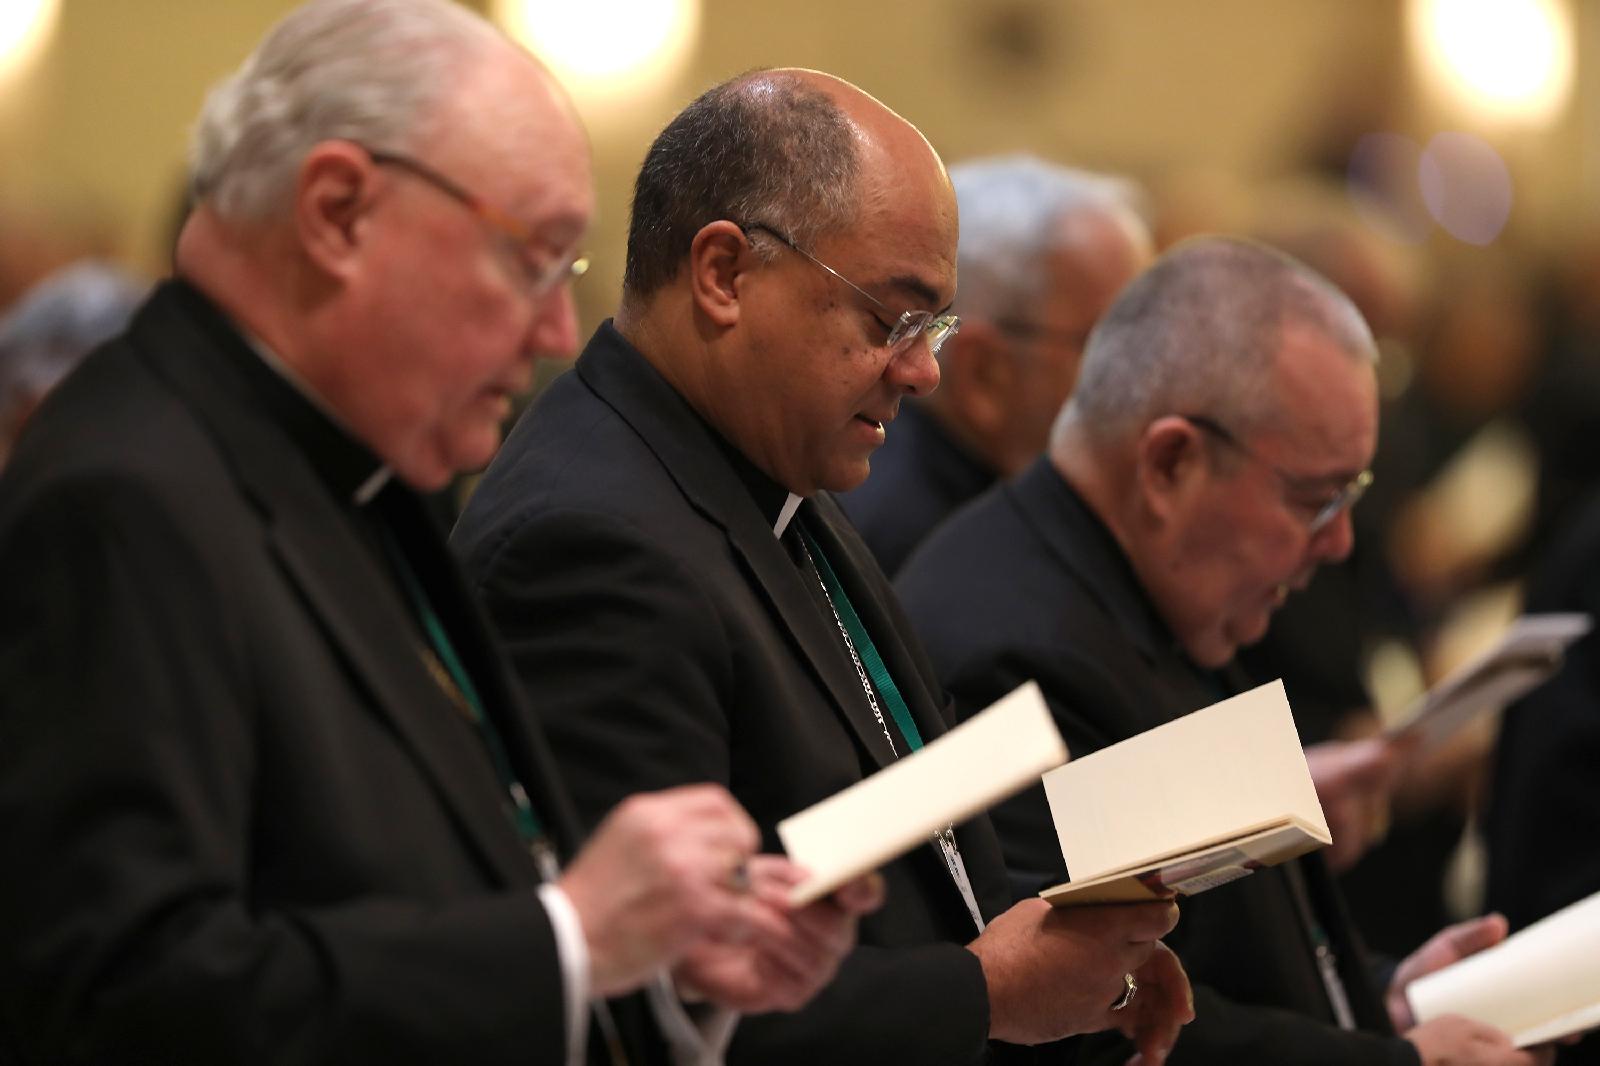 Katolická církev Jedna z kulturně nejrozmanitějších institucí v USA, ukazuje „průkopnická“ zpráva